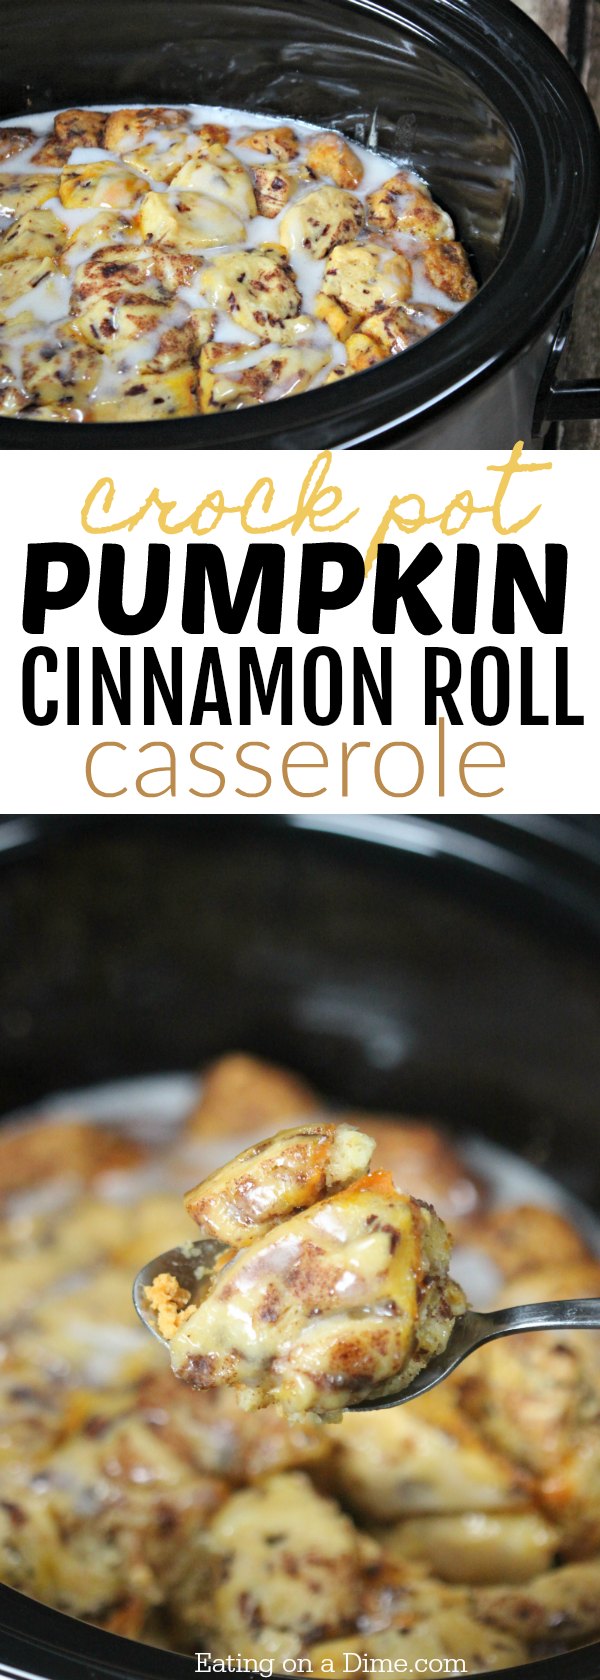 You will love this pumpkin cinnamon roll casserole recipe! It's a fun pumpkin twist on crockpot cinnamon rolls. Try this easy pumpkin recipe! 